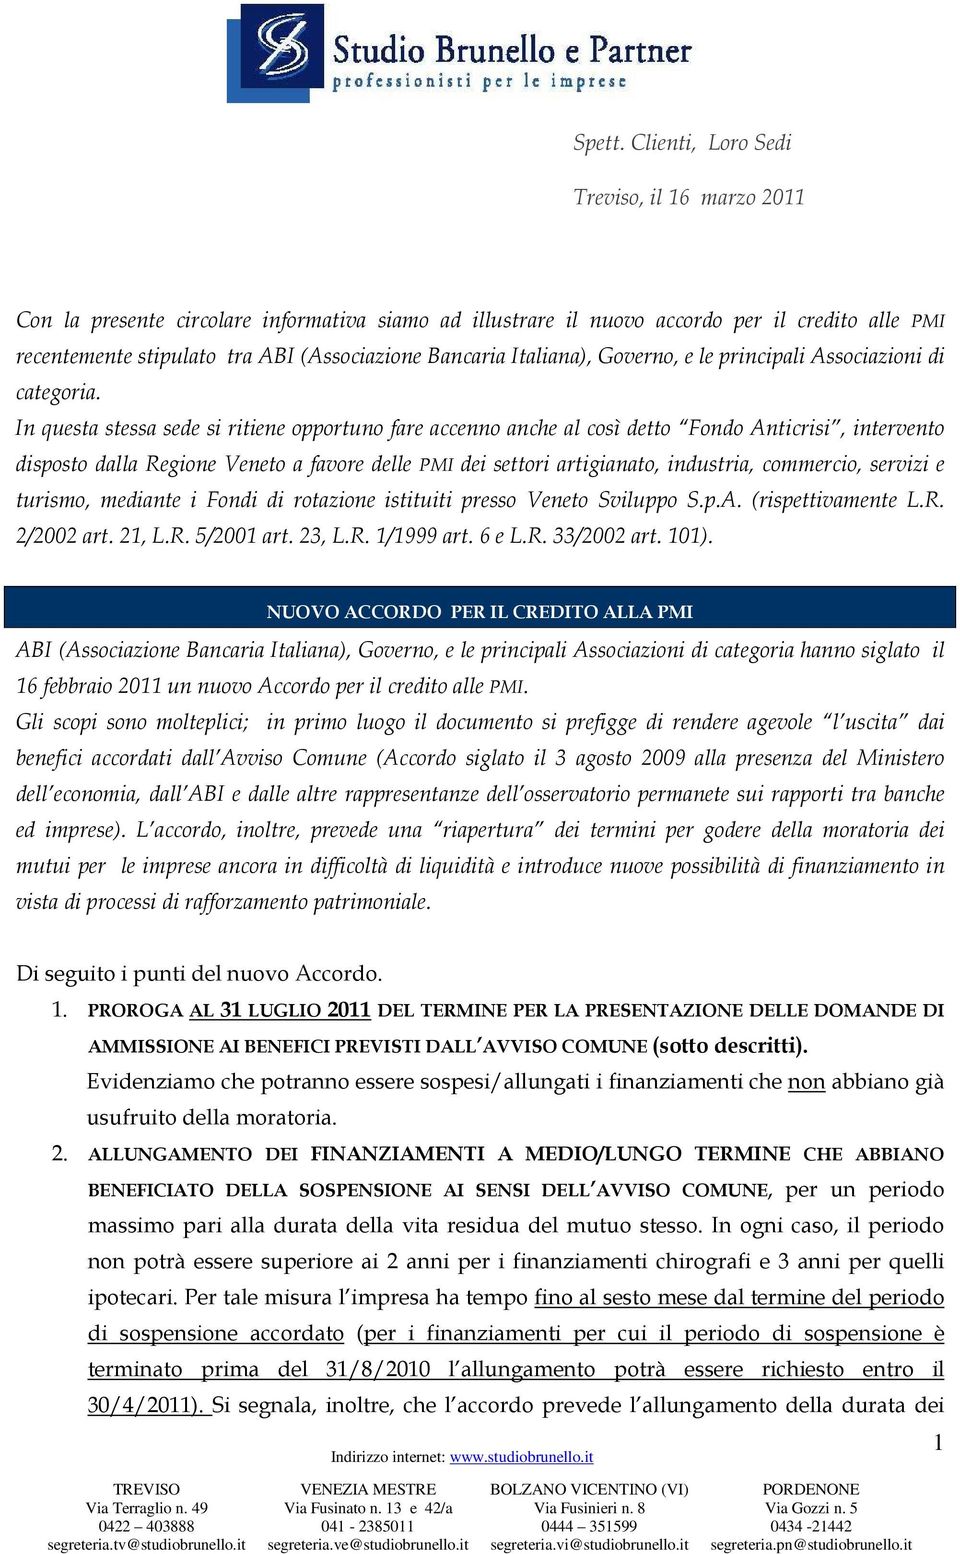 Italiana), Governo, e le principali Associazioni di categoria.